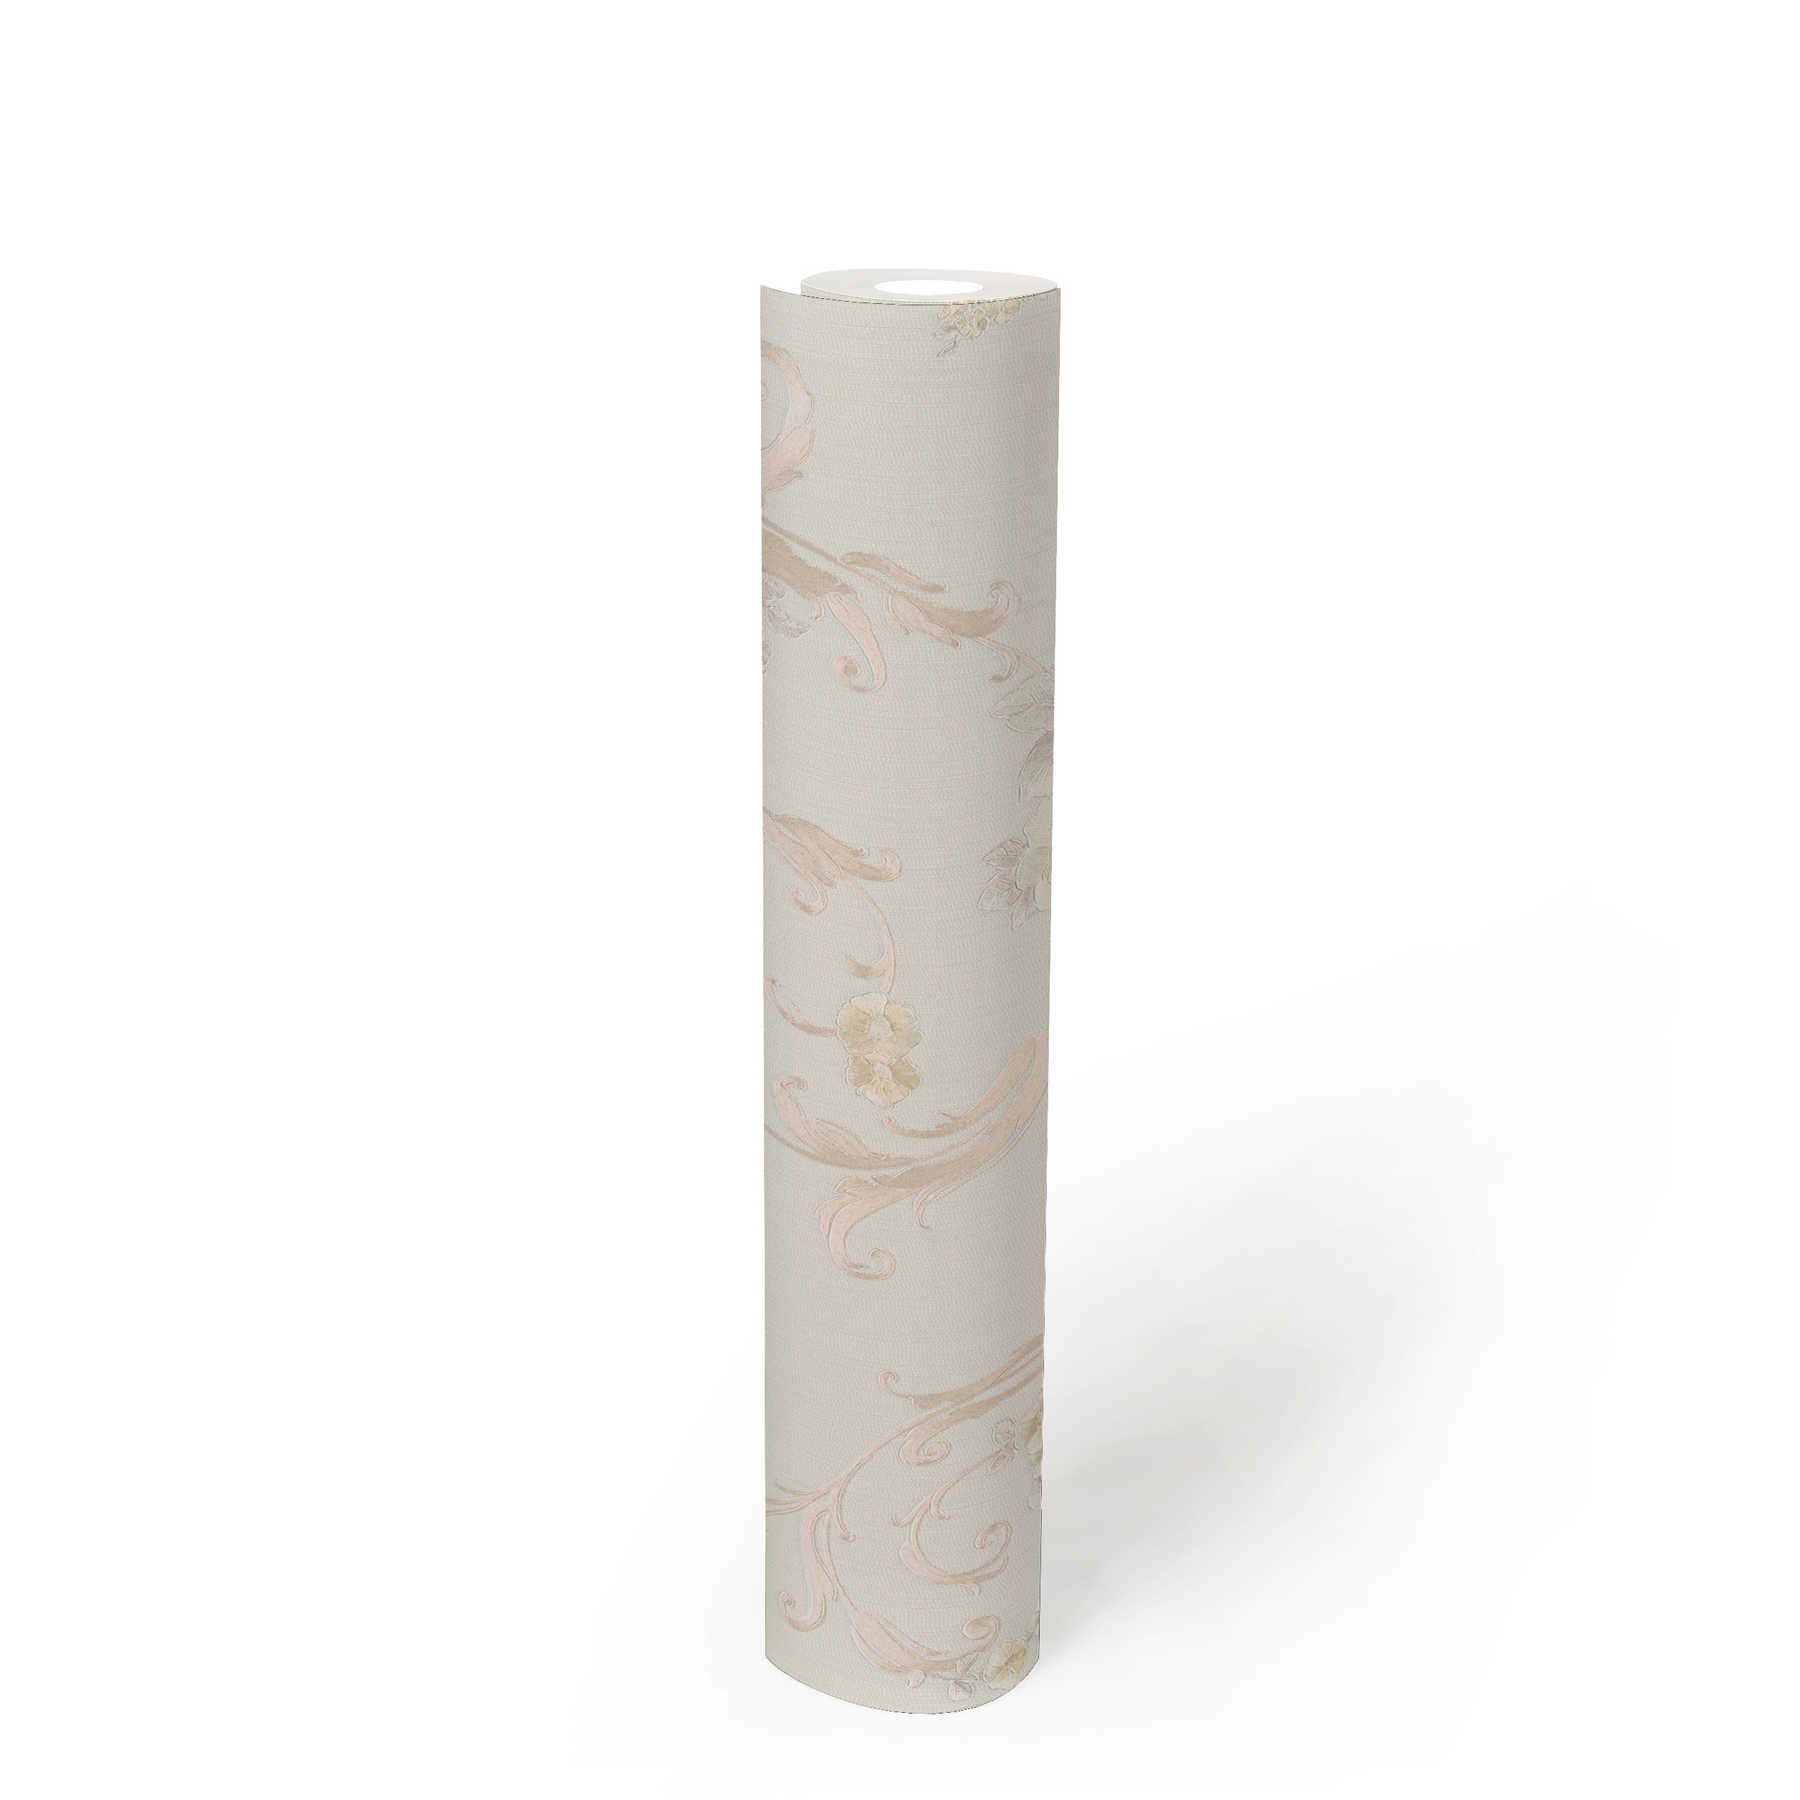             Rozenblaadjesbehang met metallic effect in landelijke stijl - crème, grijs, roze
        